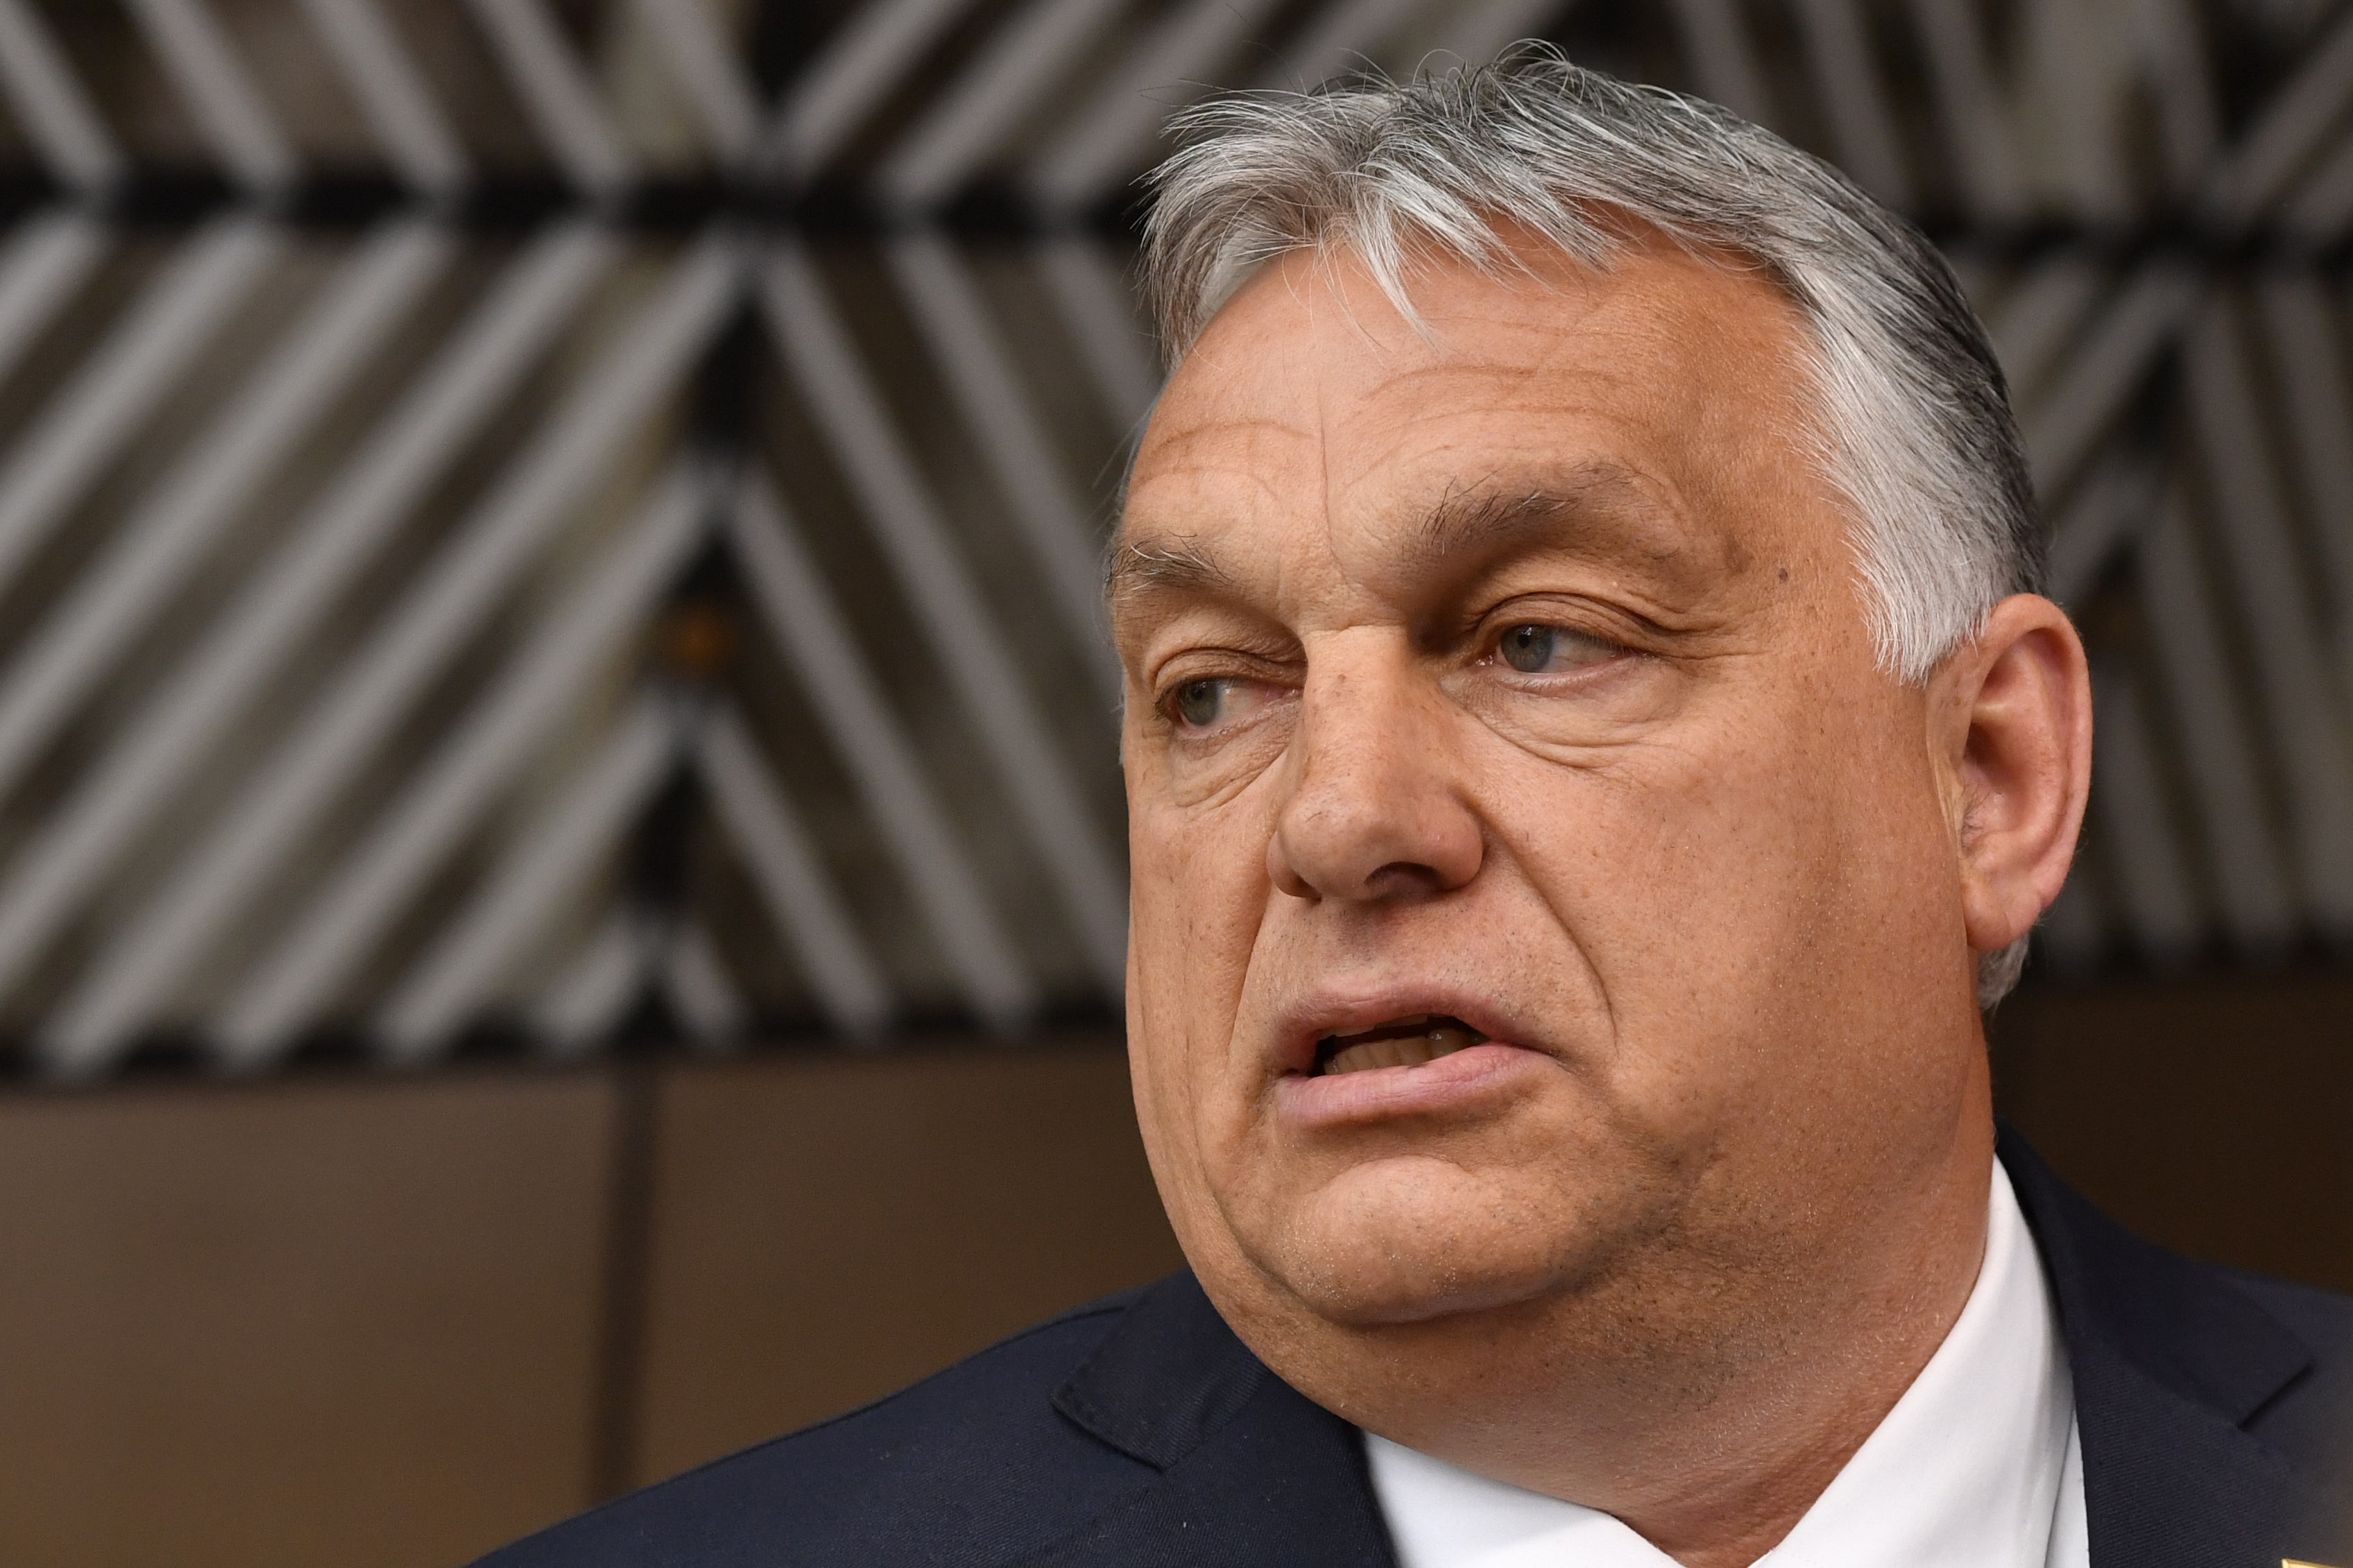 Business MAGAZIN. Viktor Orban a început să sperie investitorii: Premierul maghiar a intrat în conflict cu Gyorgy Matolacsy, guvernatorul băncii centrale şi fosta sa mână dreaptă pe problema reducerii dobânzilor. Reacţia investitorilor nu a întârziat să apară